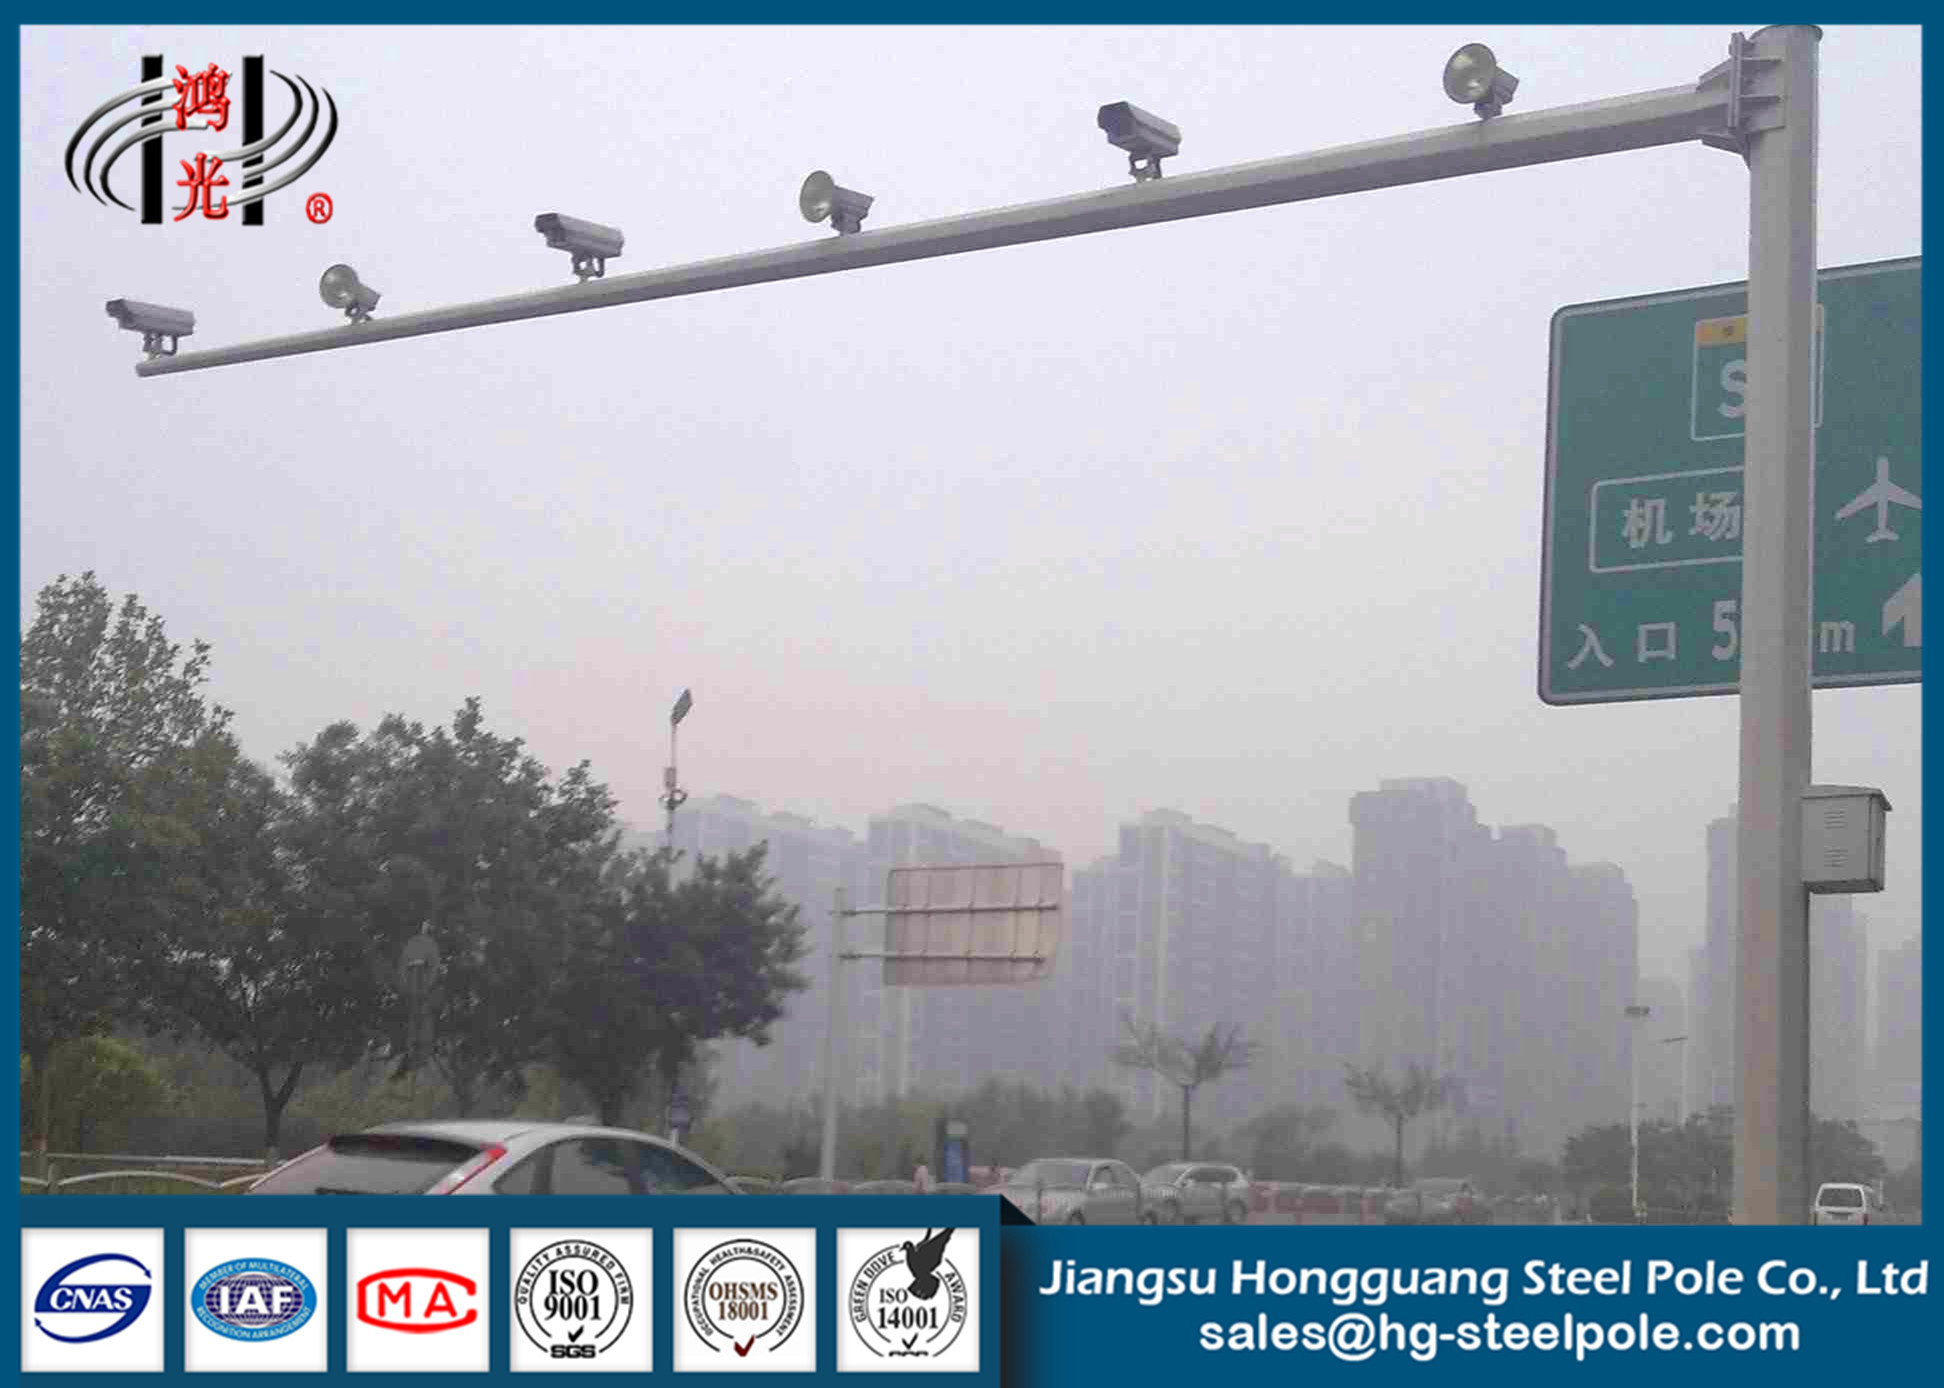 H 6.5m Yol Monitörü Galvanizli CCTV Kamera Direkleri Hava Şartlarına Direnç